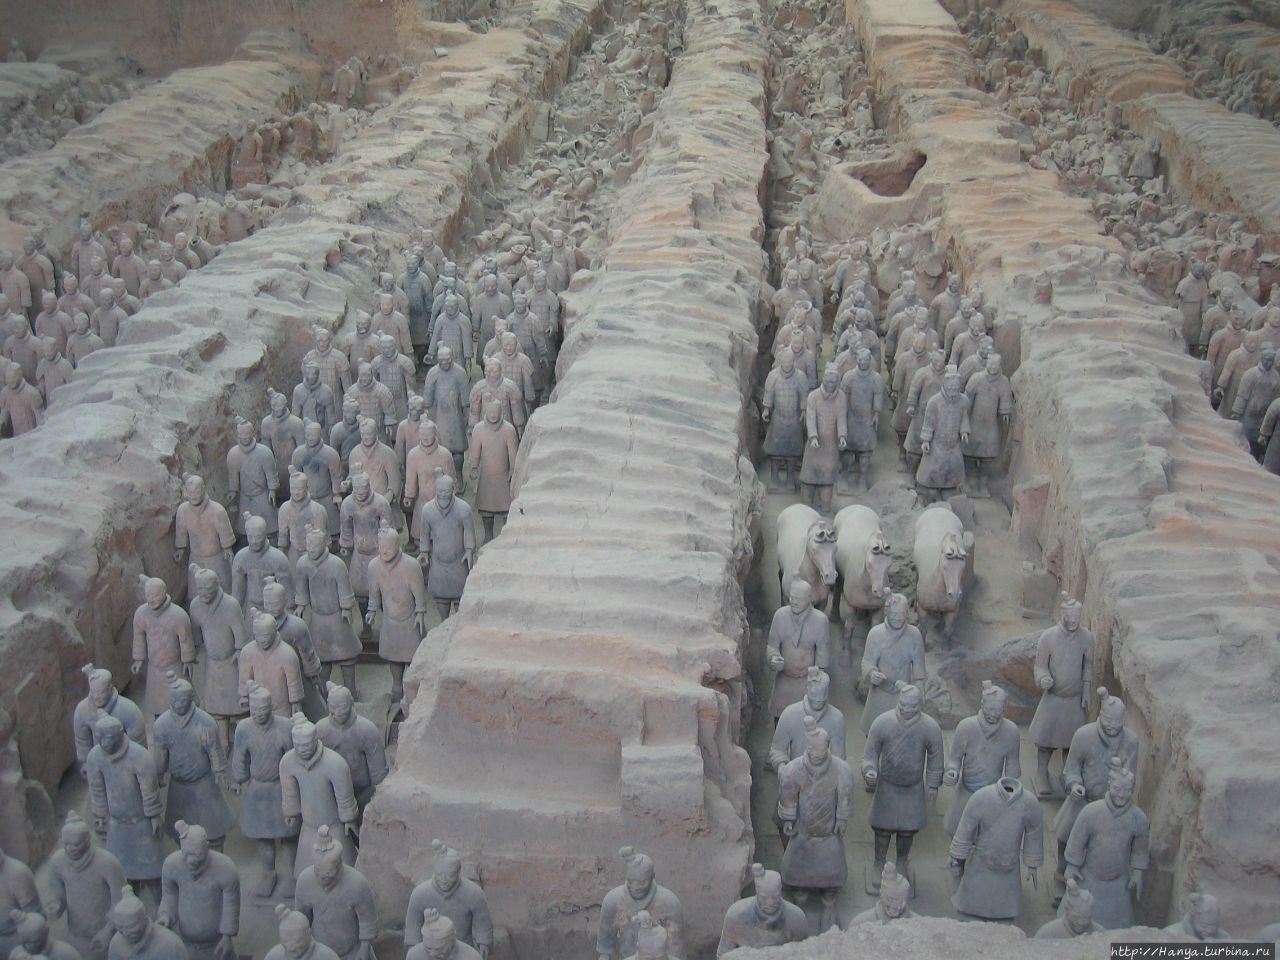 Сиань  Мавзолей императора Цинь Шихуанди и терракотовая армия (200 г.до н.э.). Занесен ЮНЕСКО в список мирового культурного наследия, ни одна из скульптур не повторяется Сиань, Китай